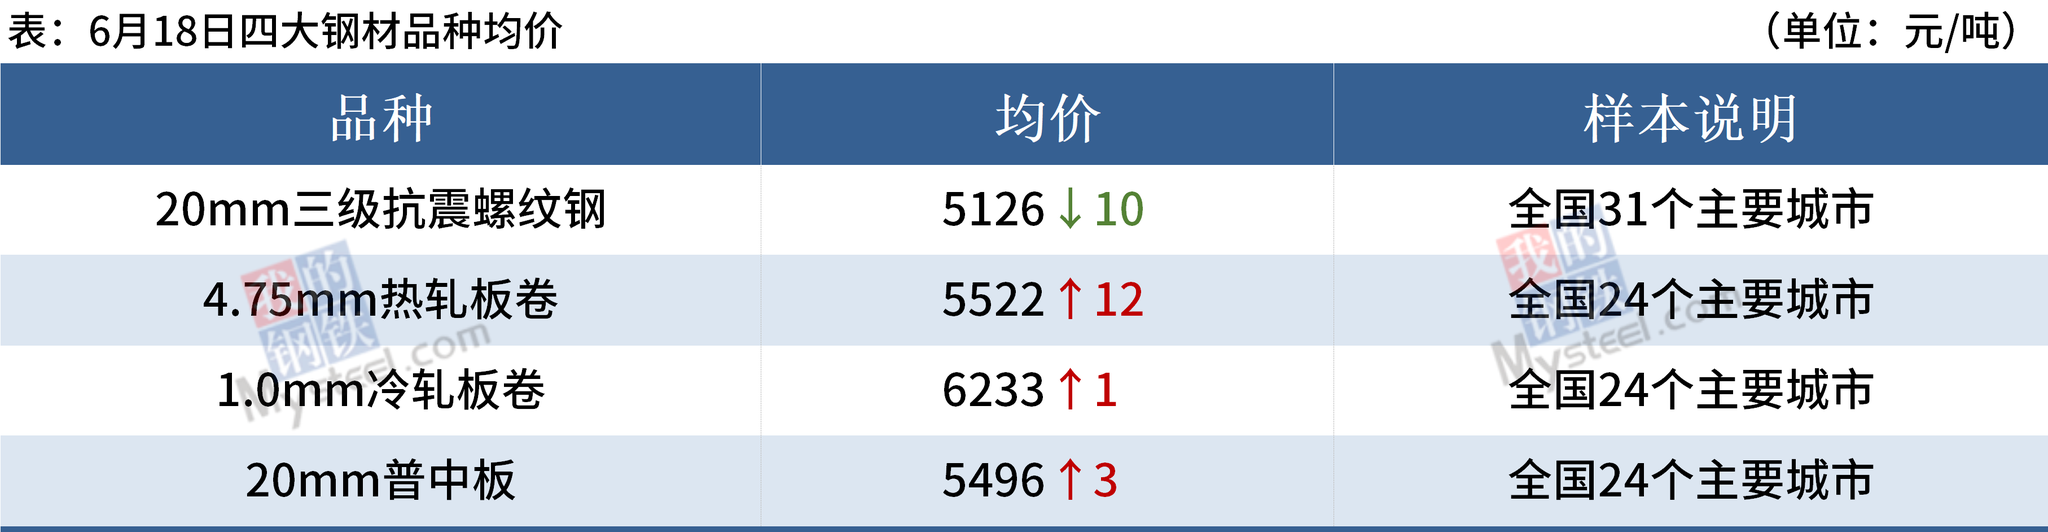 唐山邯郸限产升级 钢银库存增4.12%